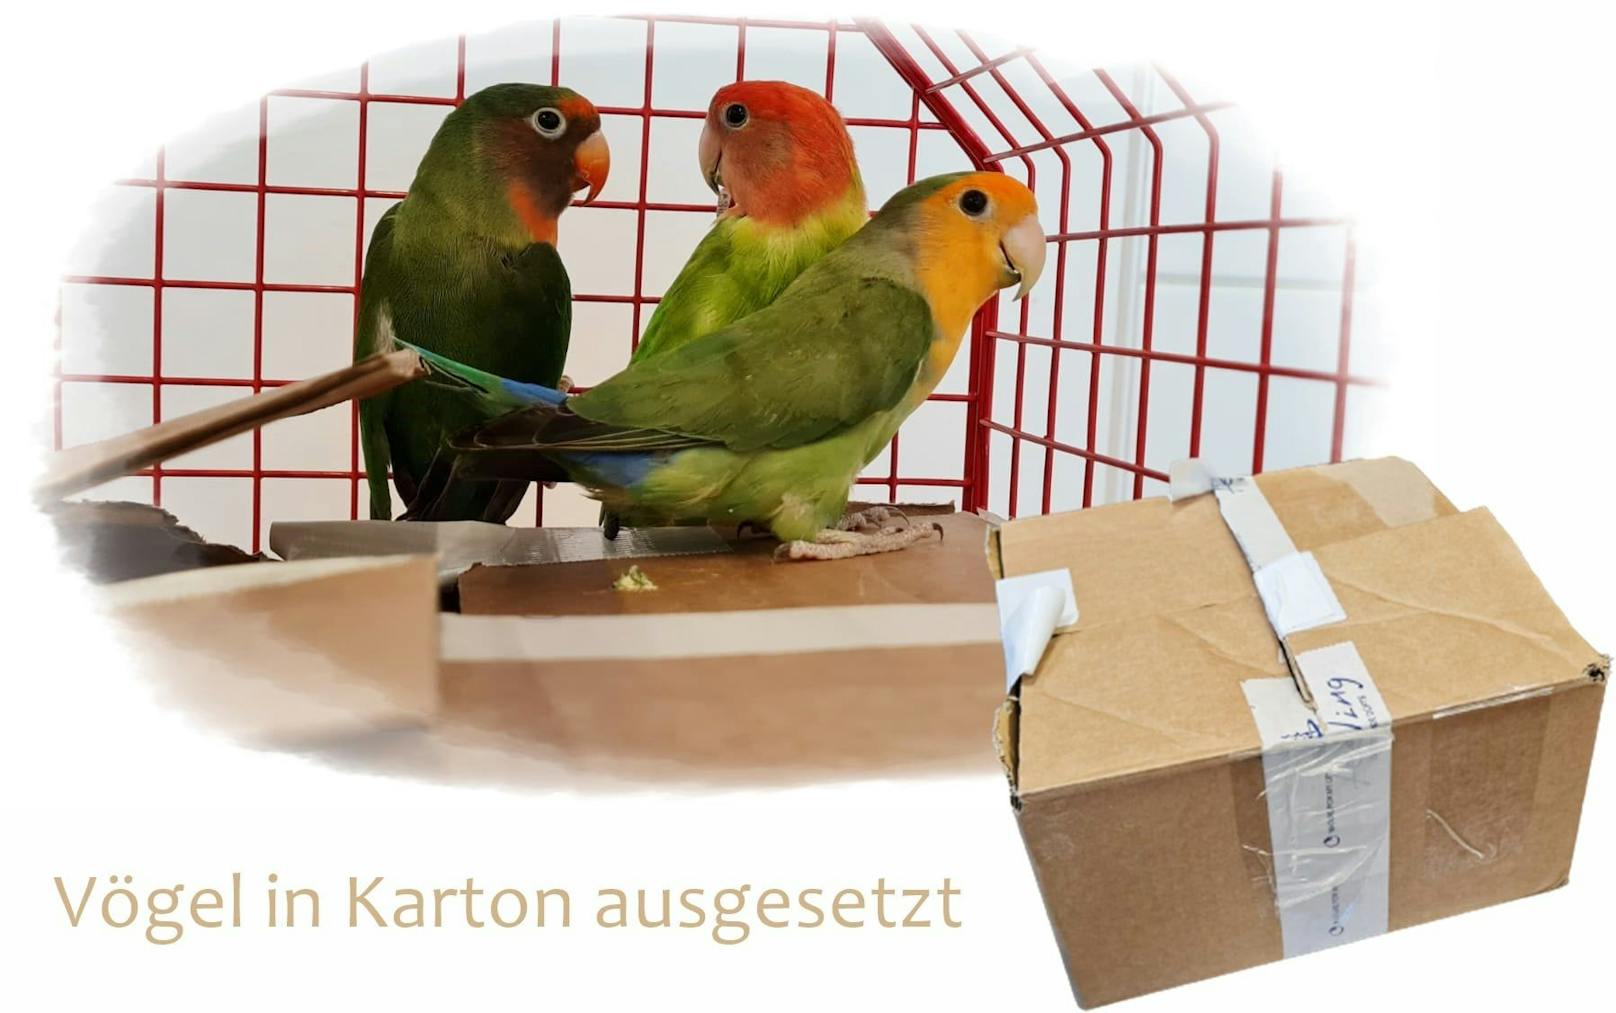 Drei Papageien in Karton gepfercht und ausgesetzt